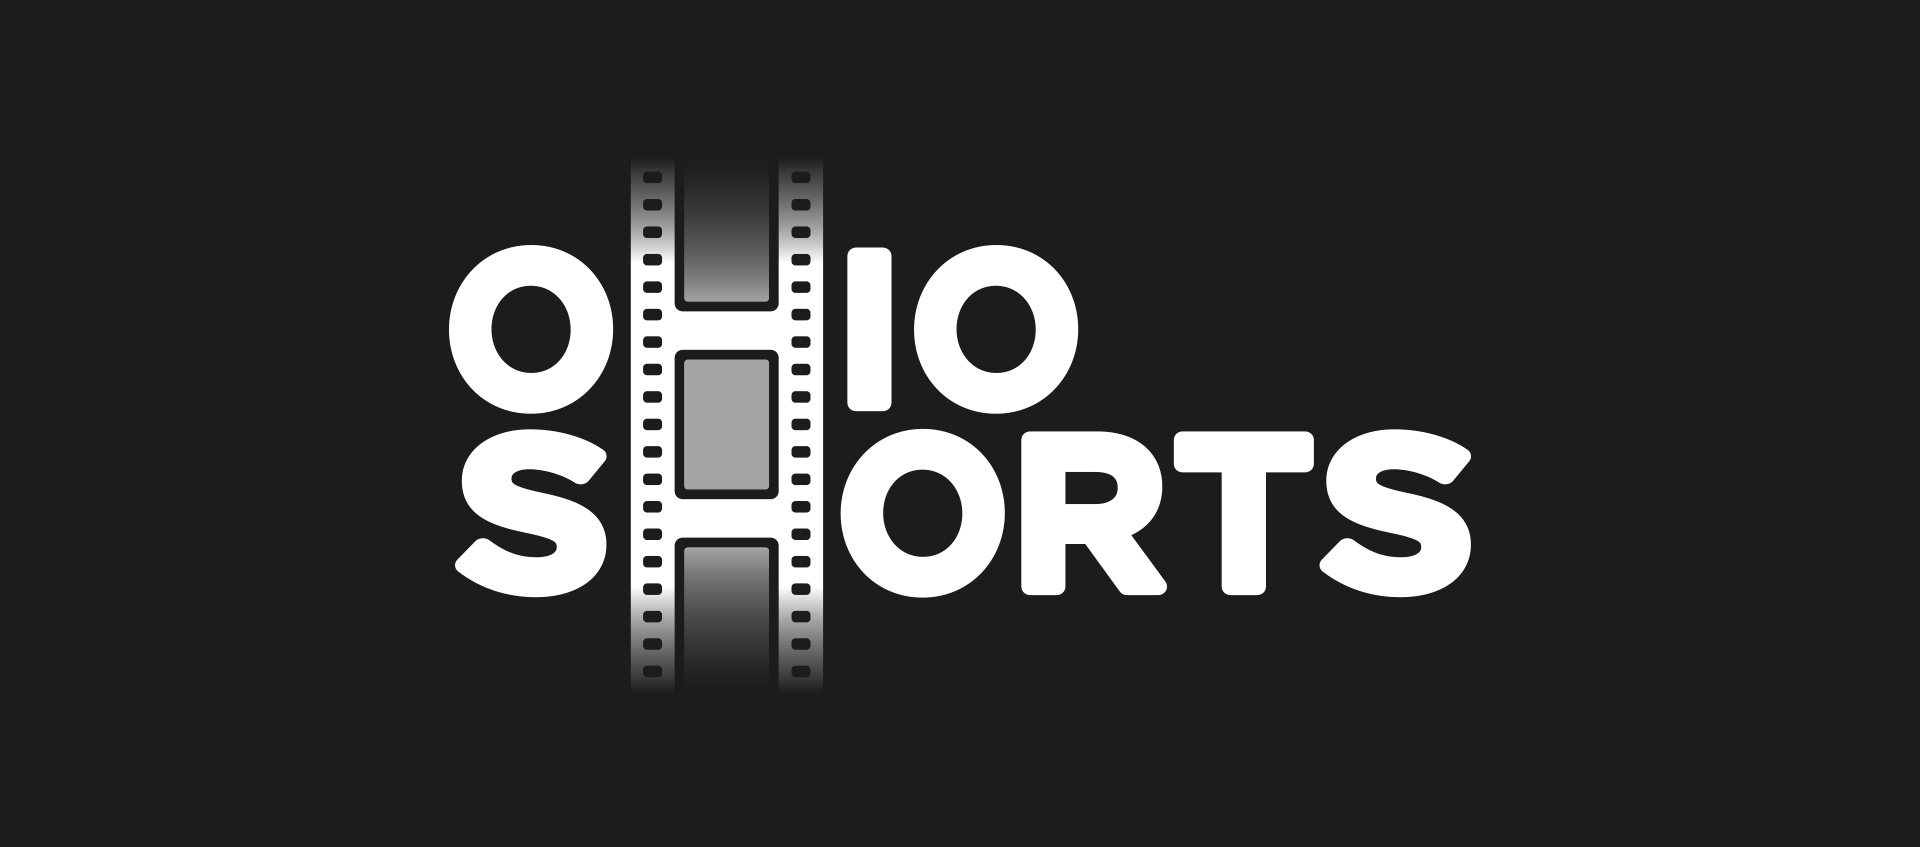 Ohio shorts logo